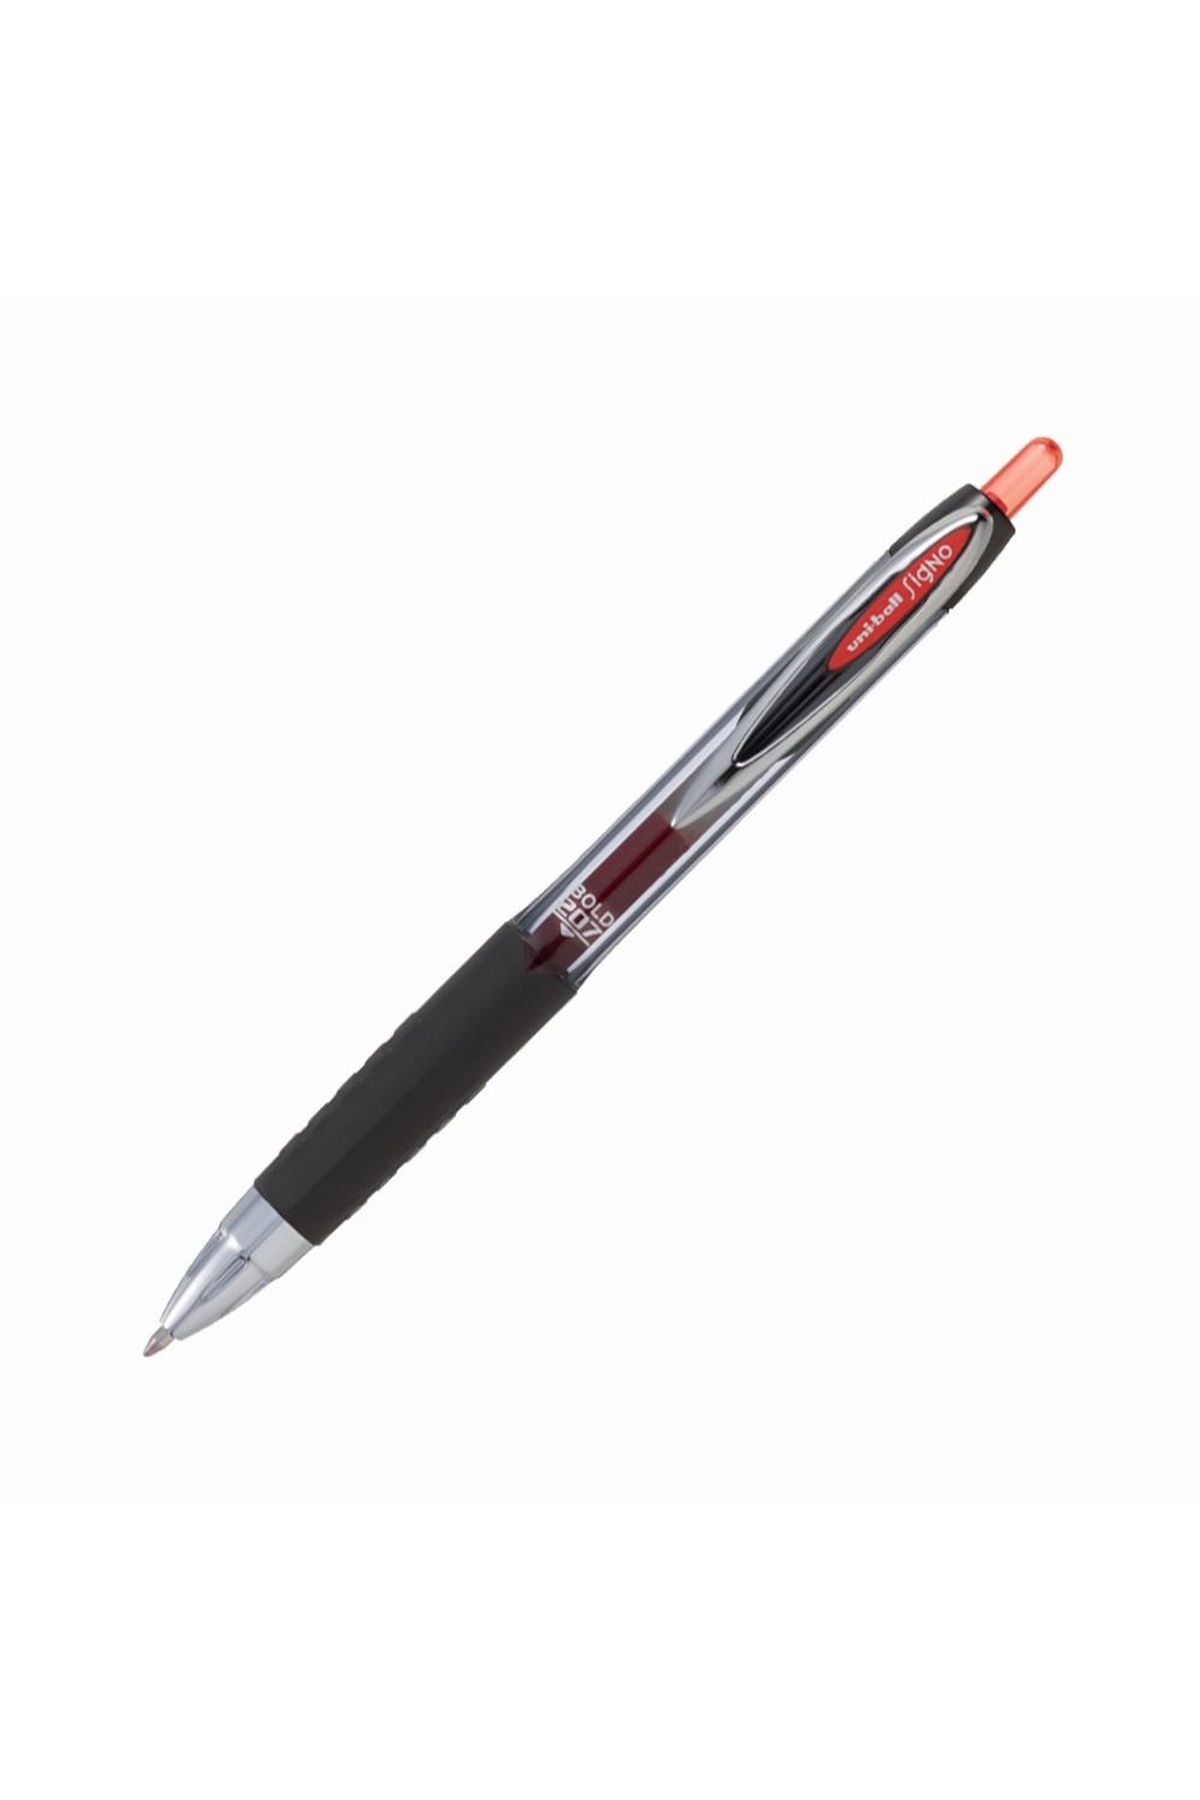 MG Gel Pen En-Gel 0.7 Tükenmez Kalem Kırmızı